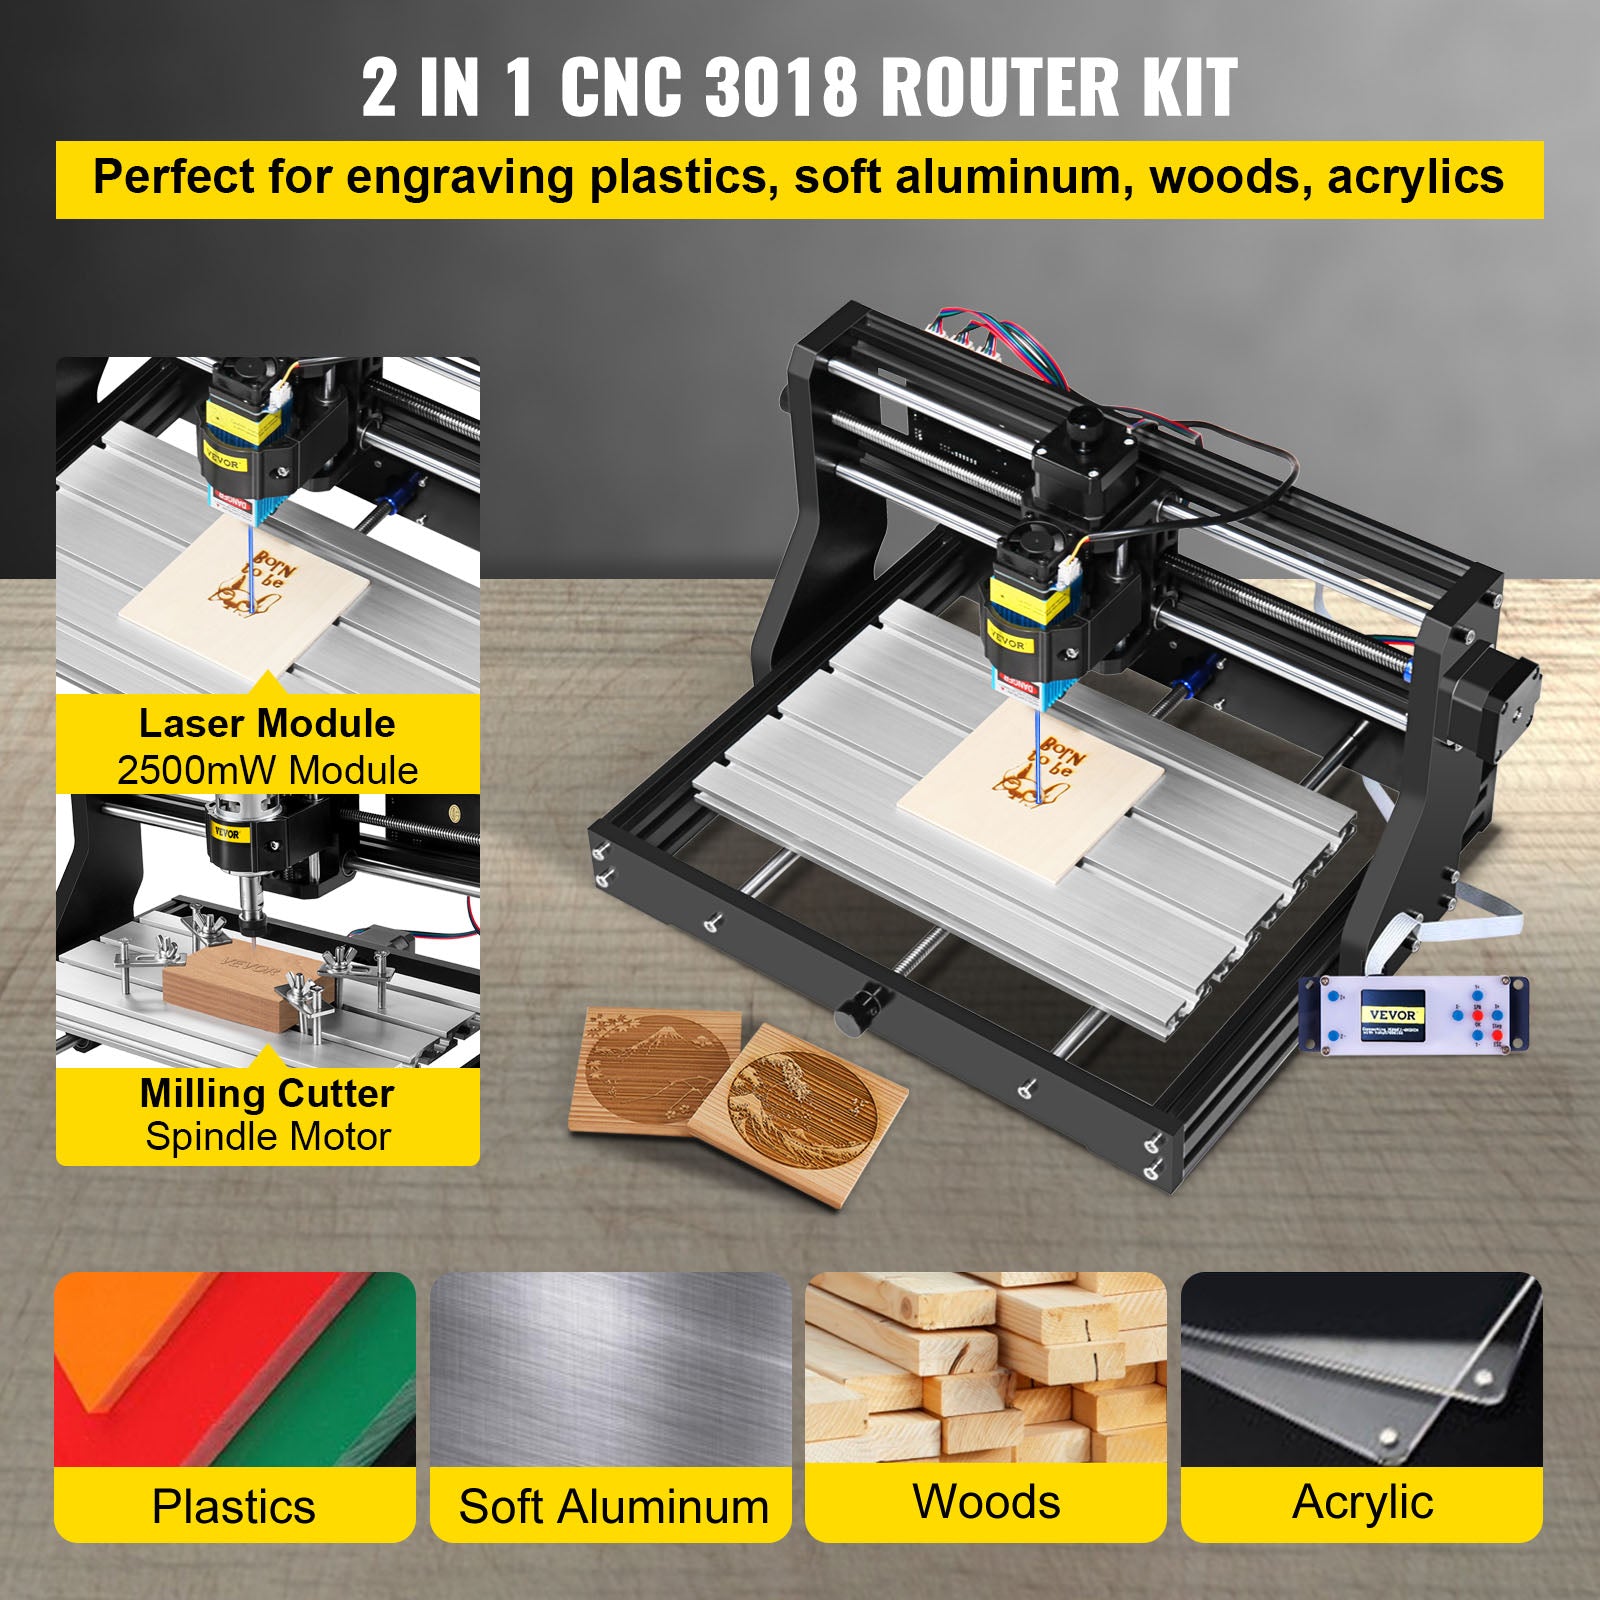 CNC Router Engraver, Laser Modul, USB Port